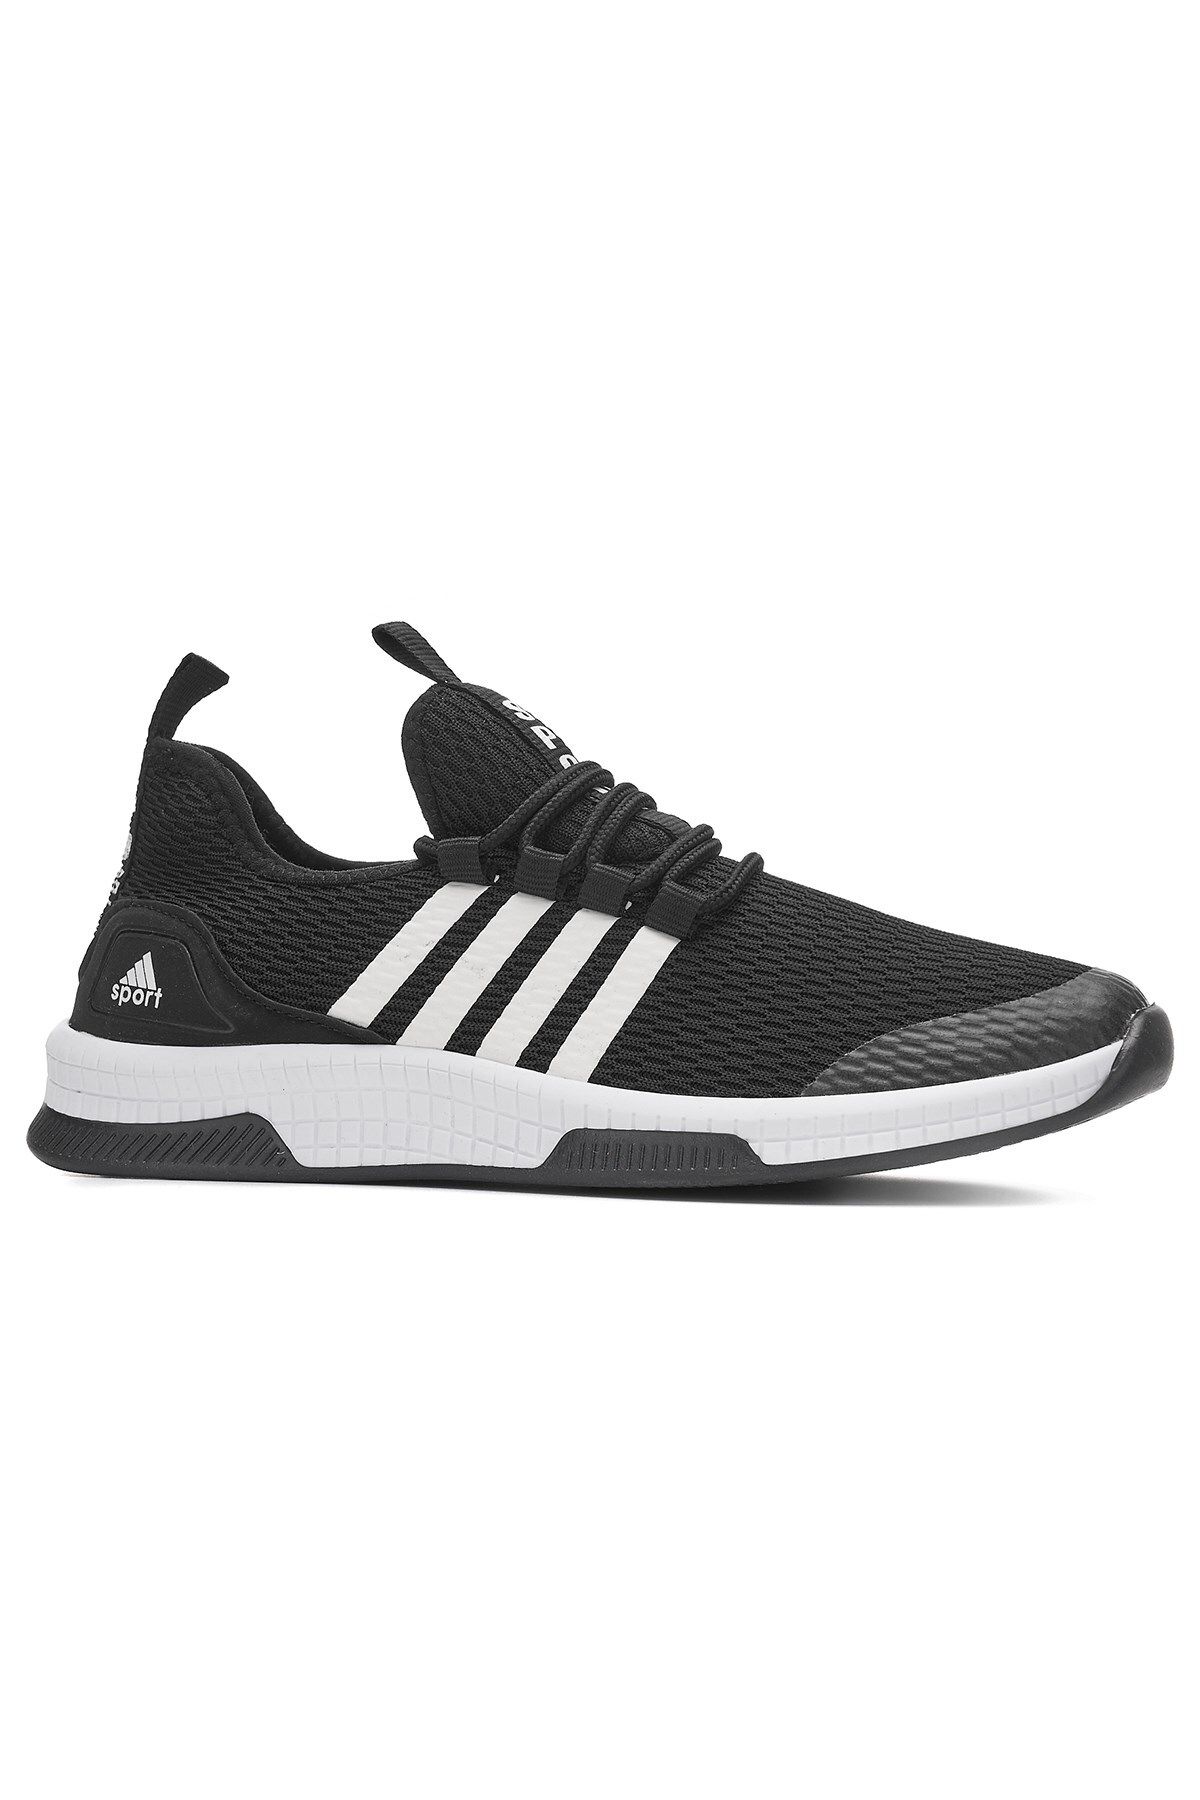 İmerShoes Günlük Unisex Siyah Beyaz Sneaker Nefes Alabilen Hafif Yürüyüş Esnek Spor Ayakkabı 249